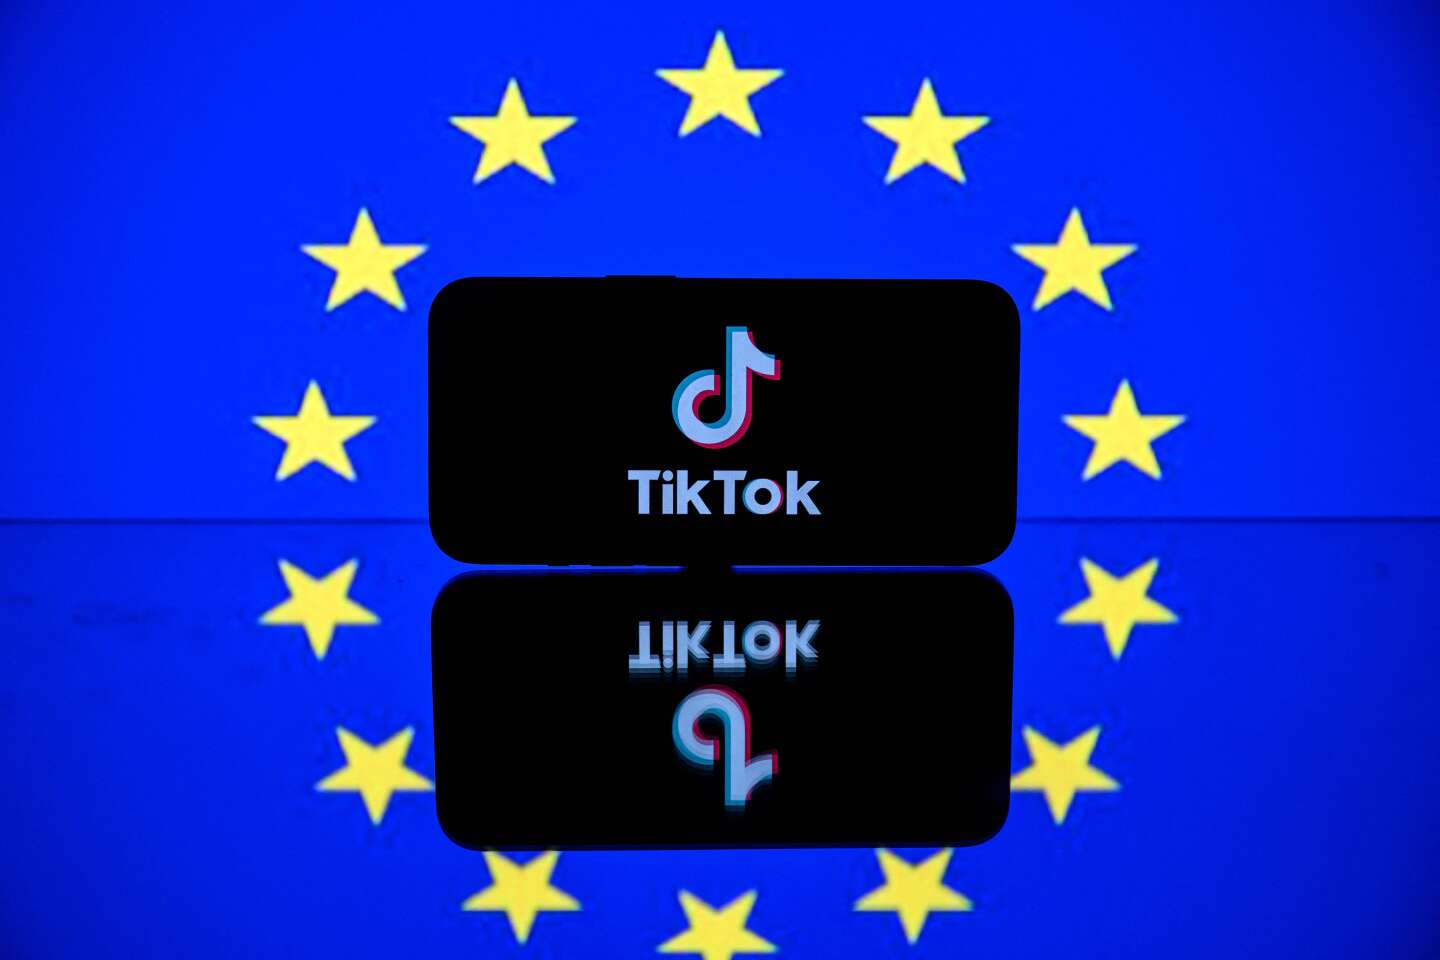 TikTok dévoile ses statistiques de modération dans l’Union européenne